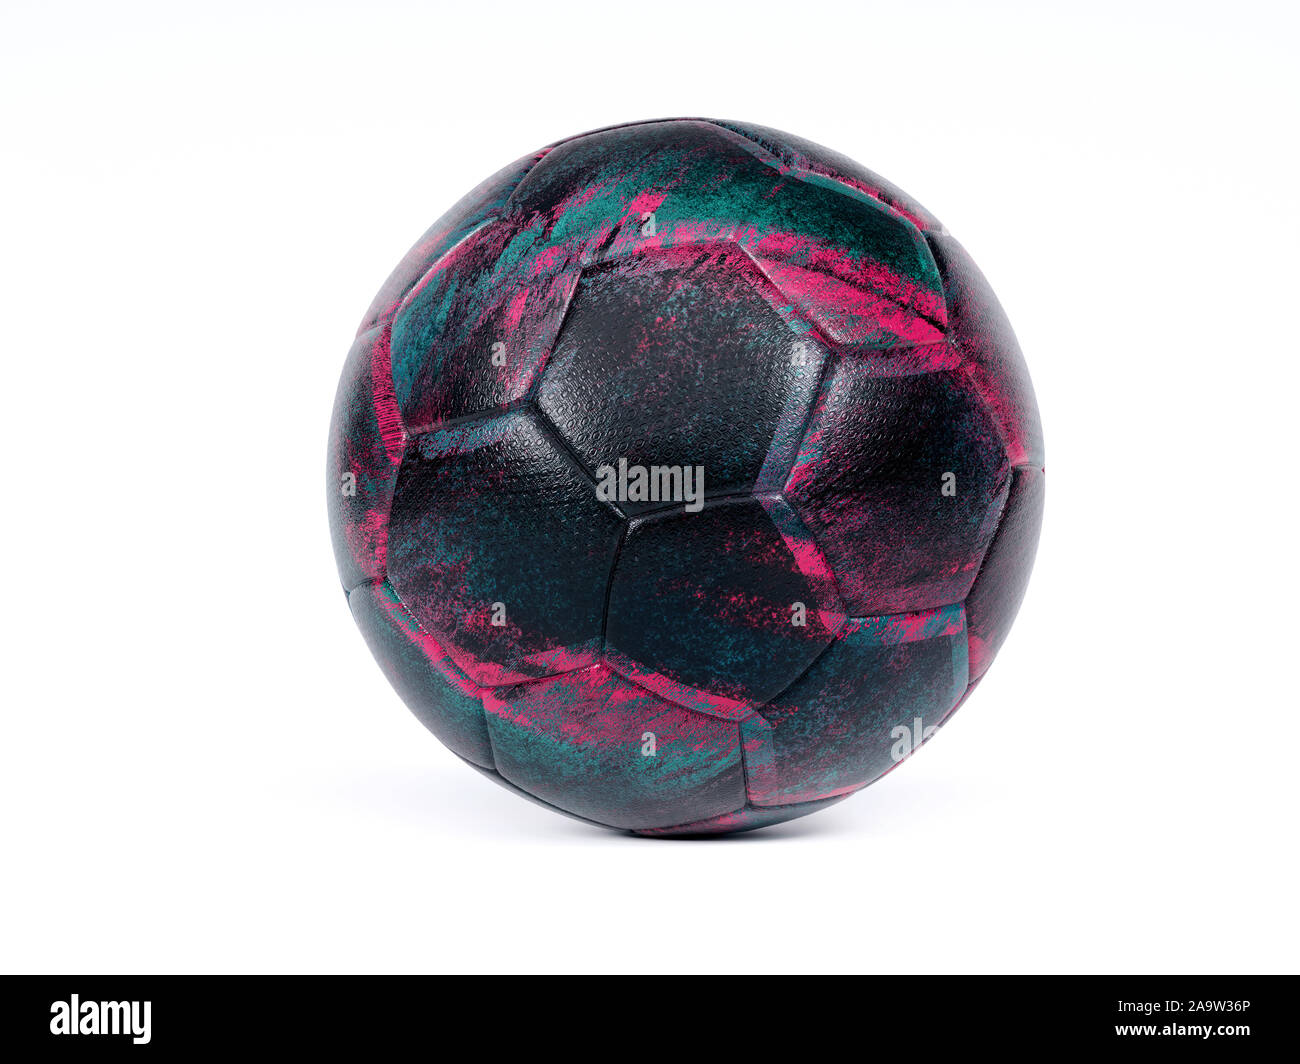 Nero o calcio pallone da calcio con design scuro blu e viola stampa astratta, isolato su sfondo bianco con ombra Foto Stock